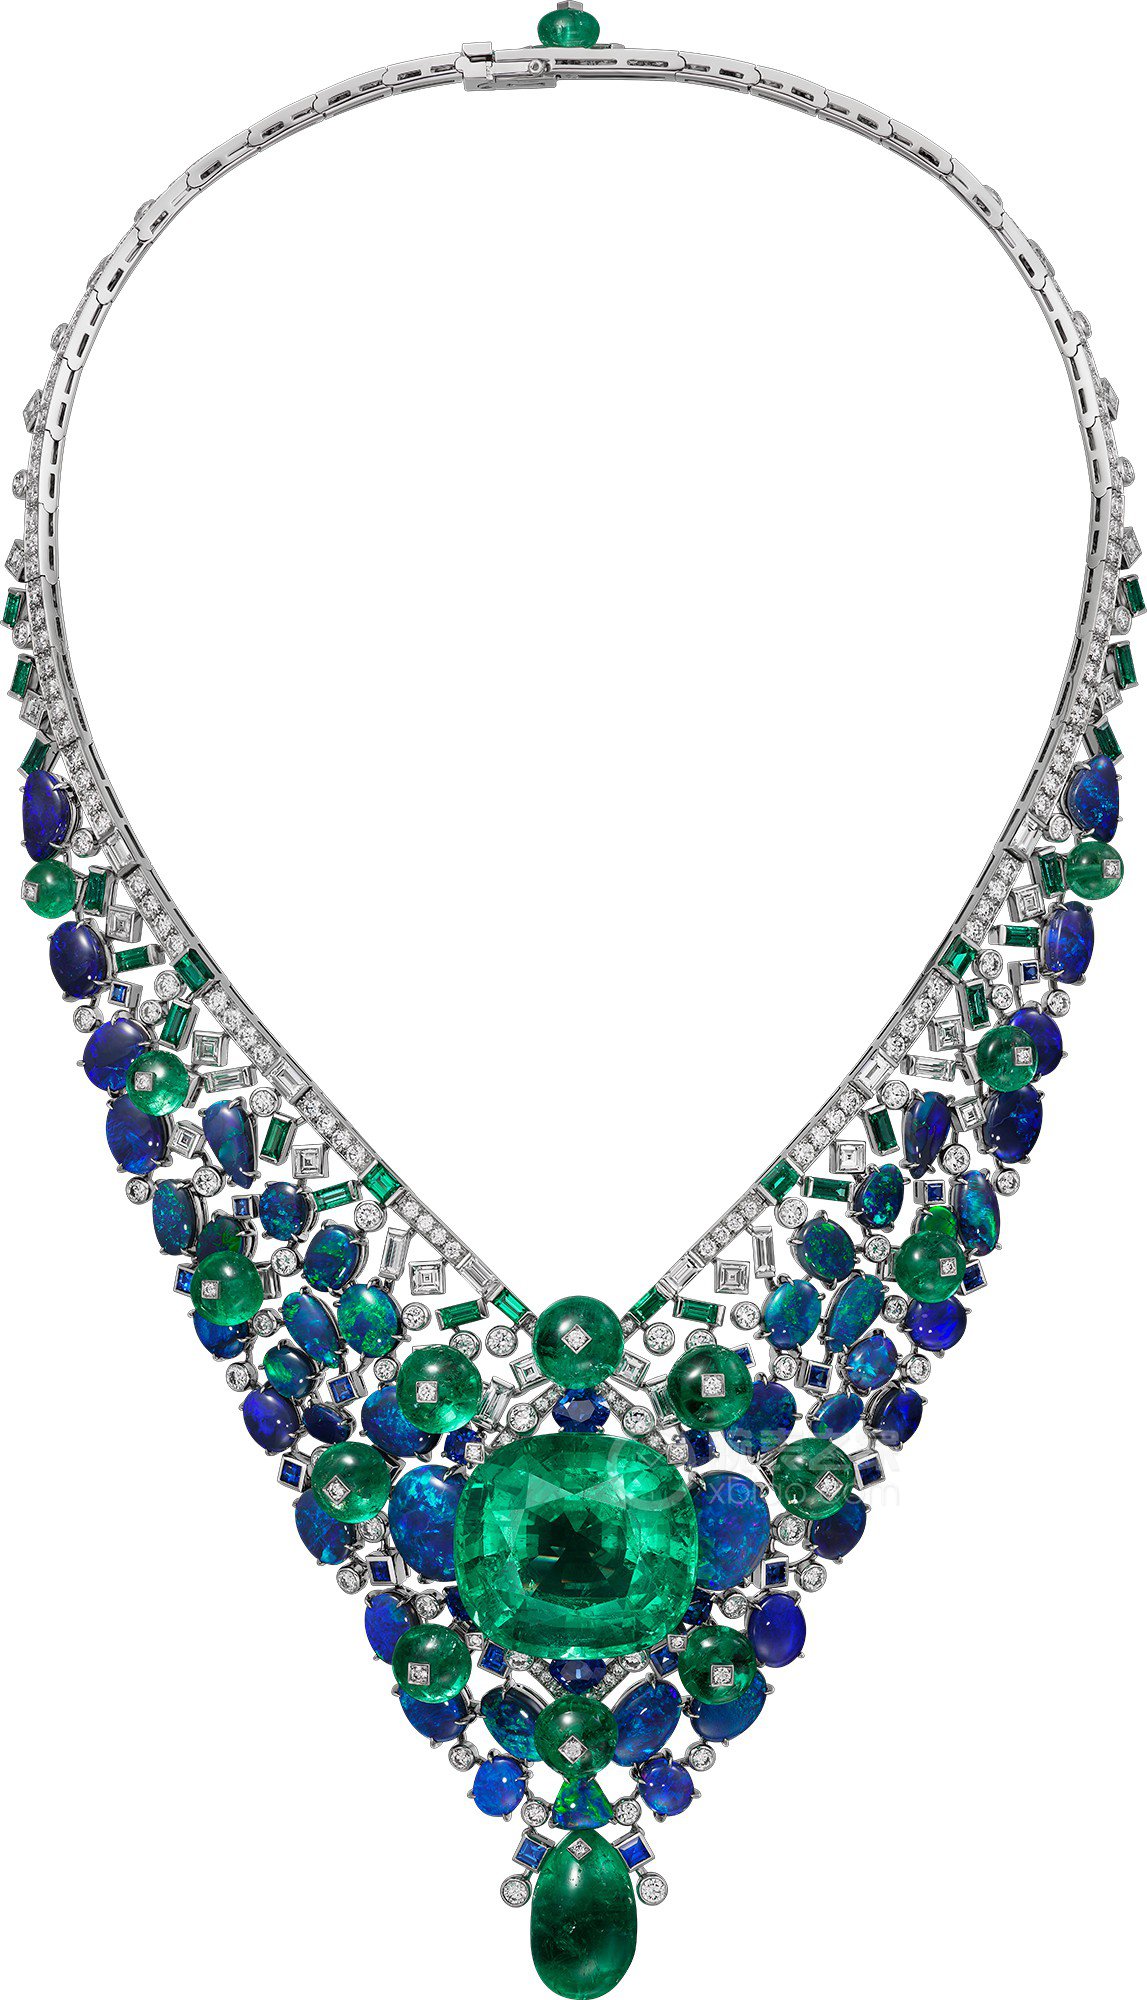 卡地亚LE VOYAGE RECOMMENCÉ高级珠宝系列SAMBULA高级珠宝项链项链